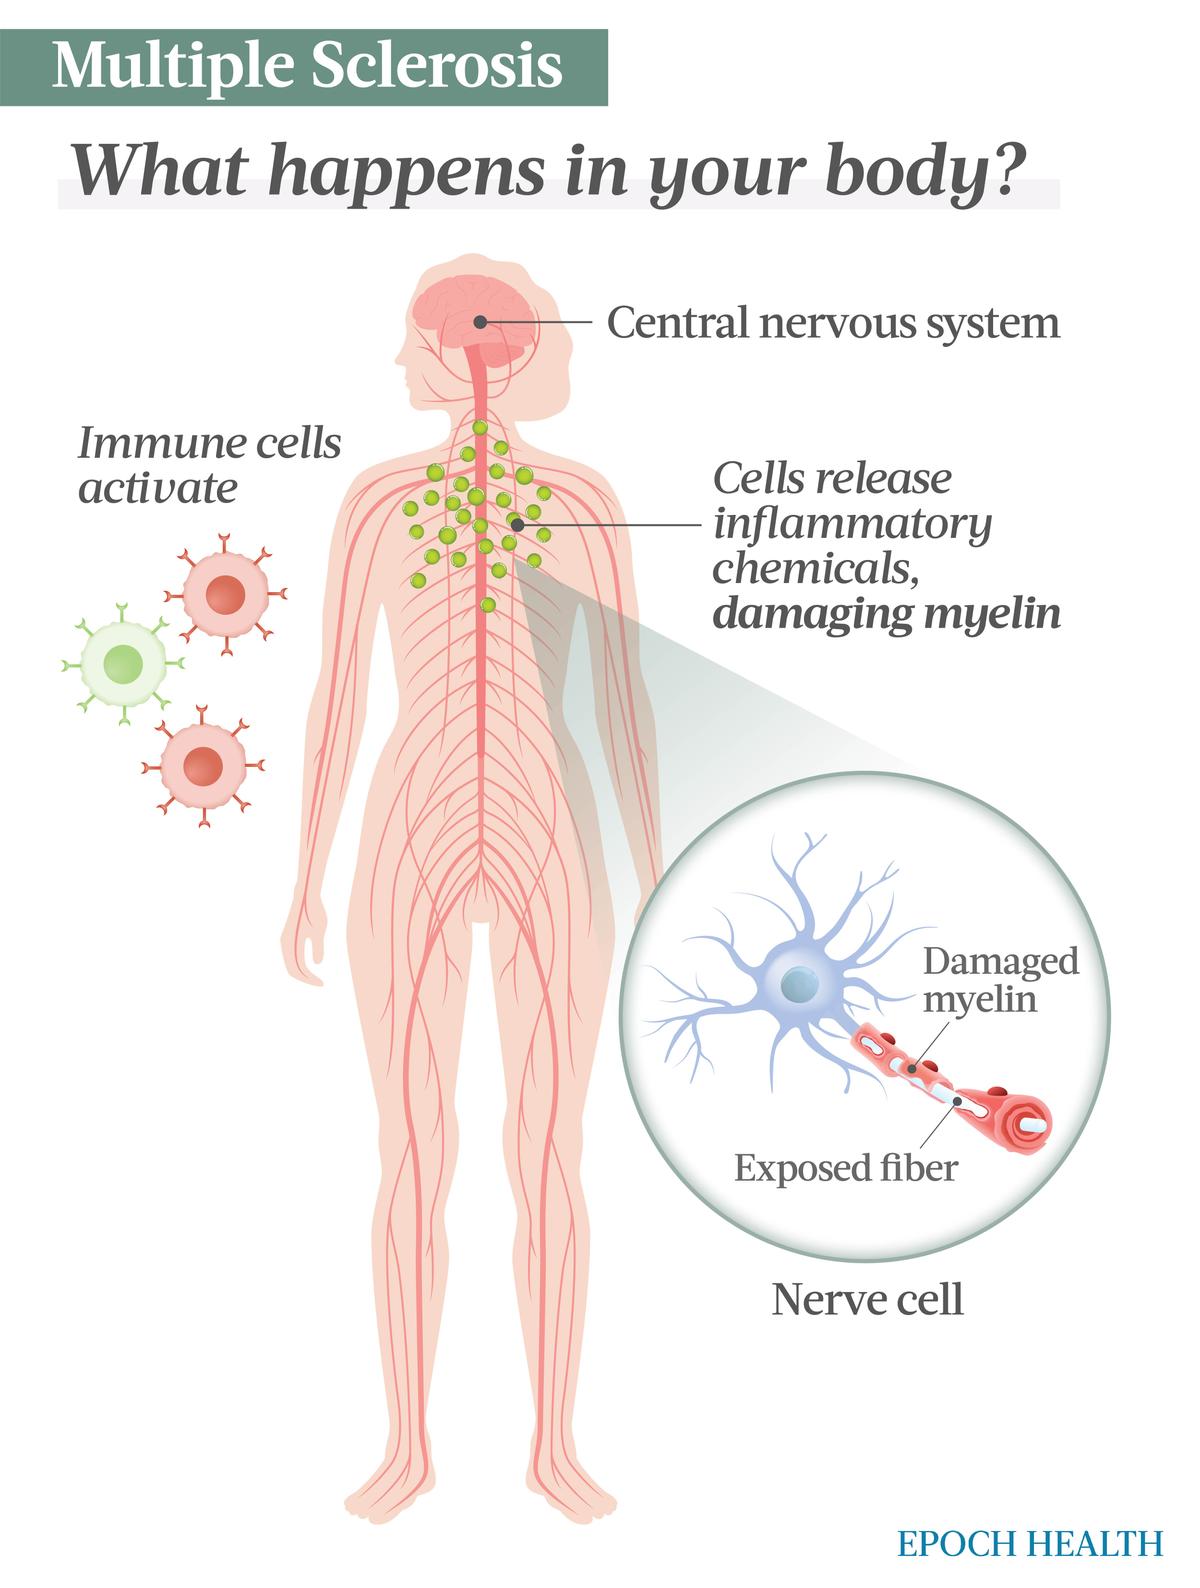 Dans la SEP, une réponse auto-immune active les cellules immunitaires comme les lymphocytes T et B, qui libèrent ensuite des cytokines inflammatoires qui endommagent la myéline, la gaine protectrice recouvrant les fibres des cellules nerveuses. Cela perturbe la communication entre les nerfs. (Illustrations d'Epoch Times, Shutterstock)